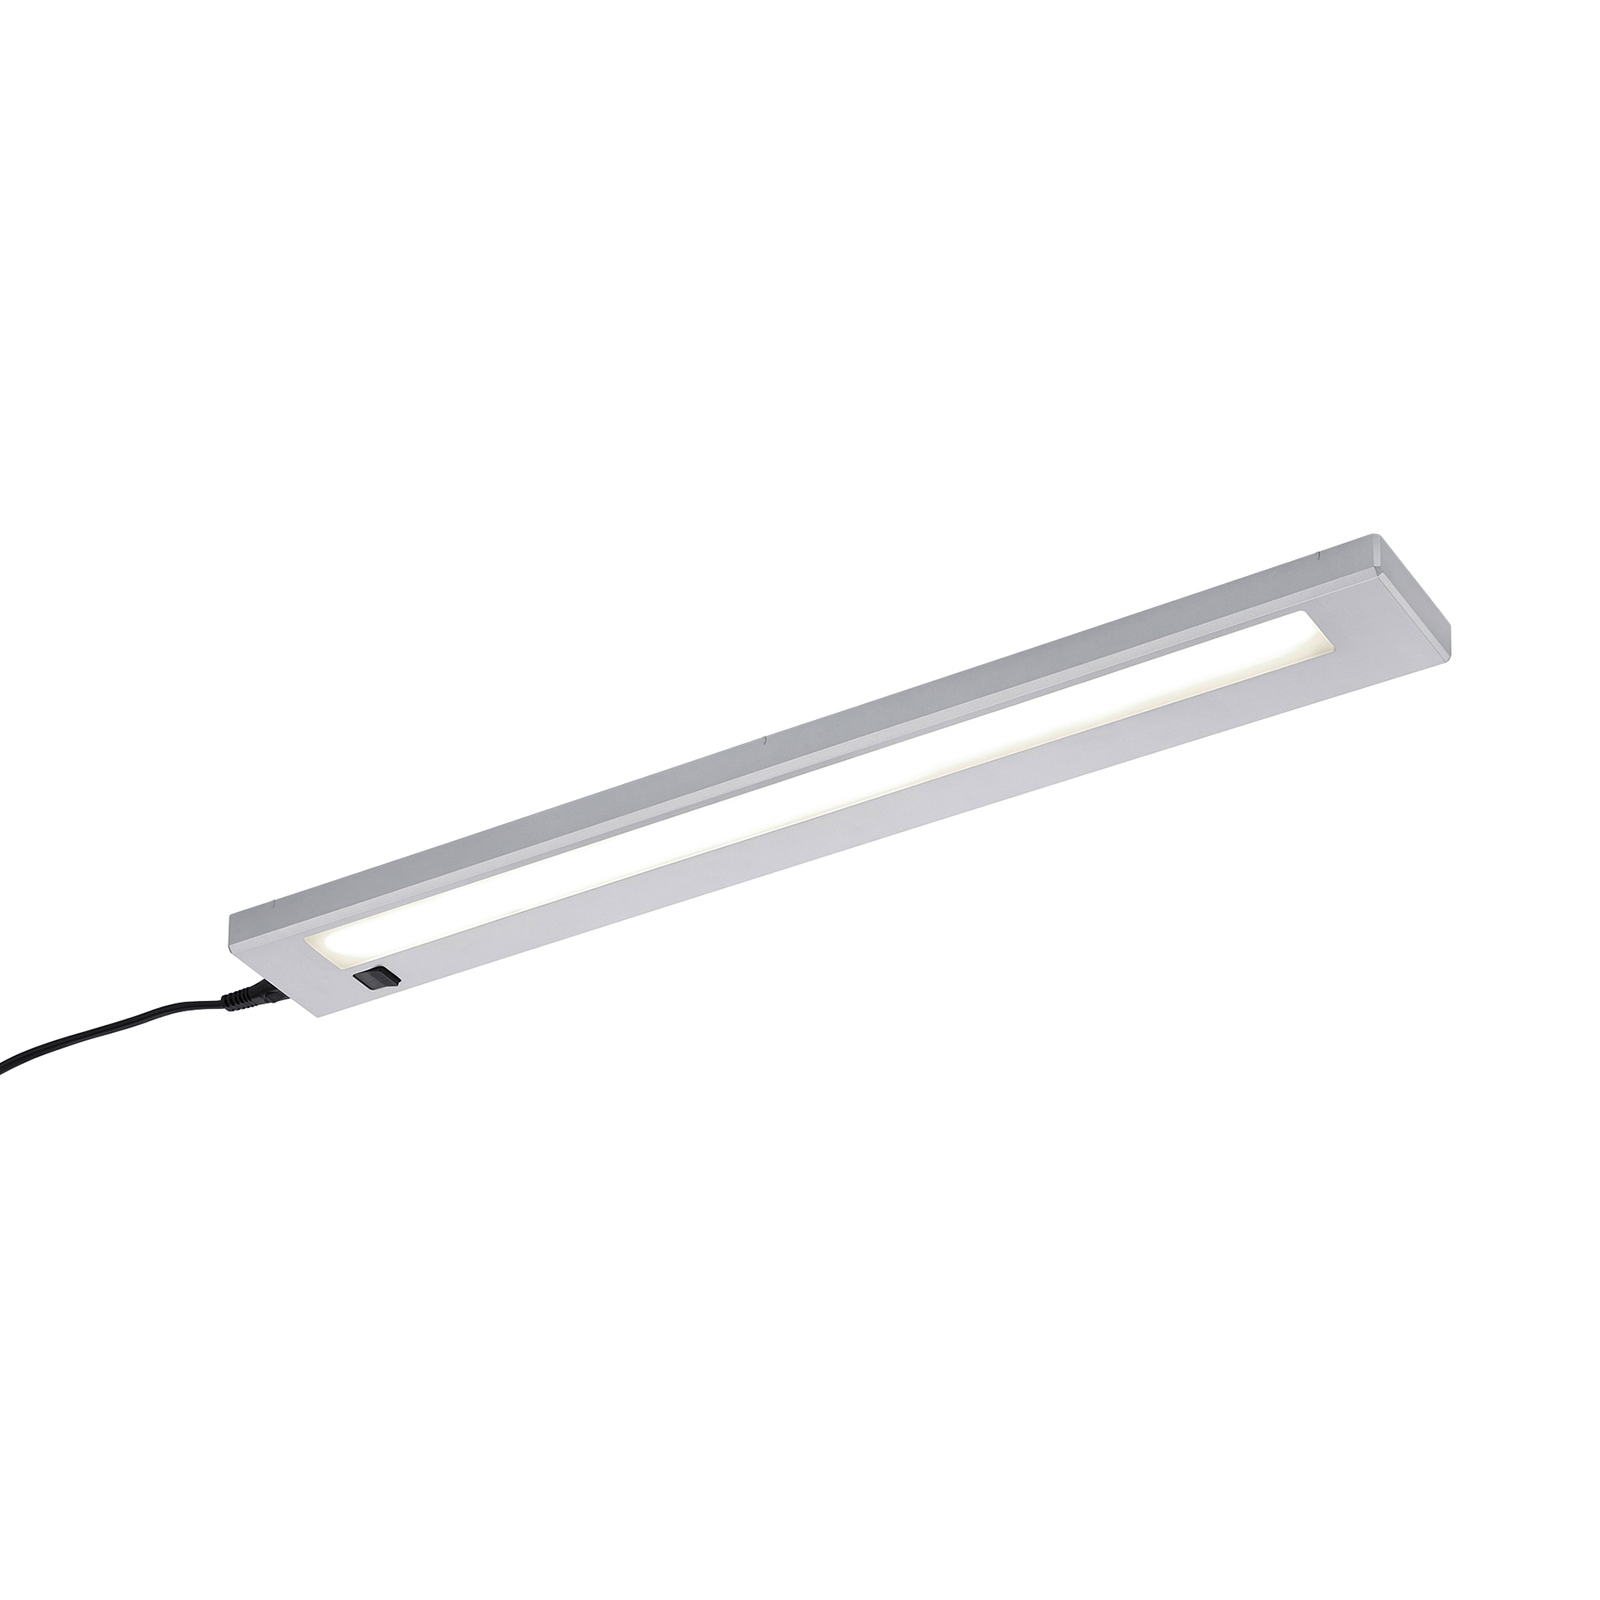 LED-bänklampa Alino, titan, längd 55 cm